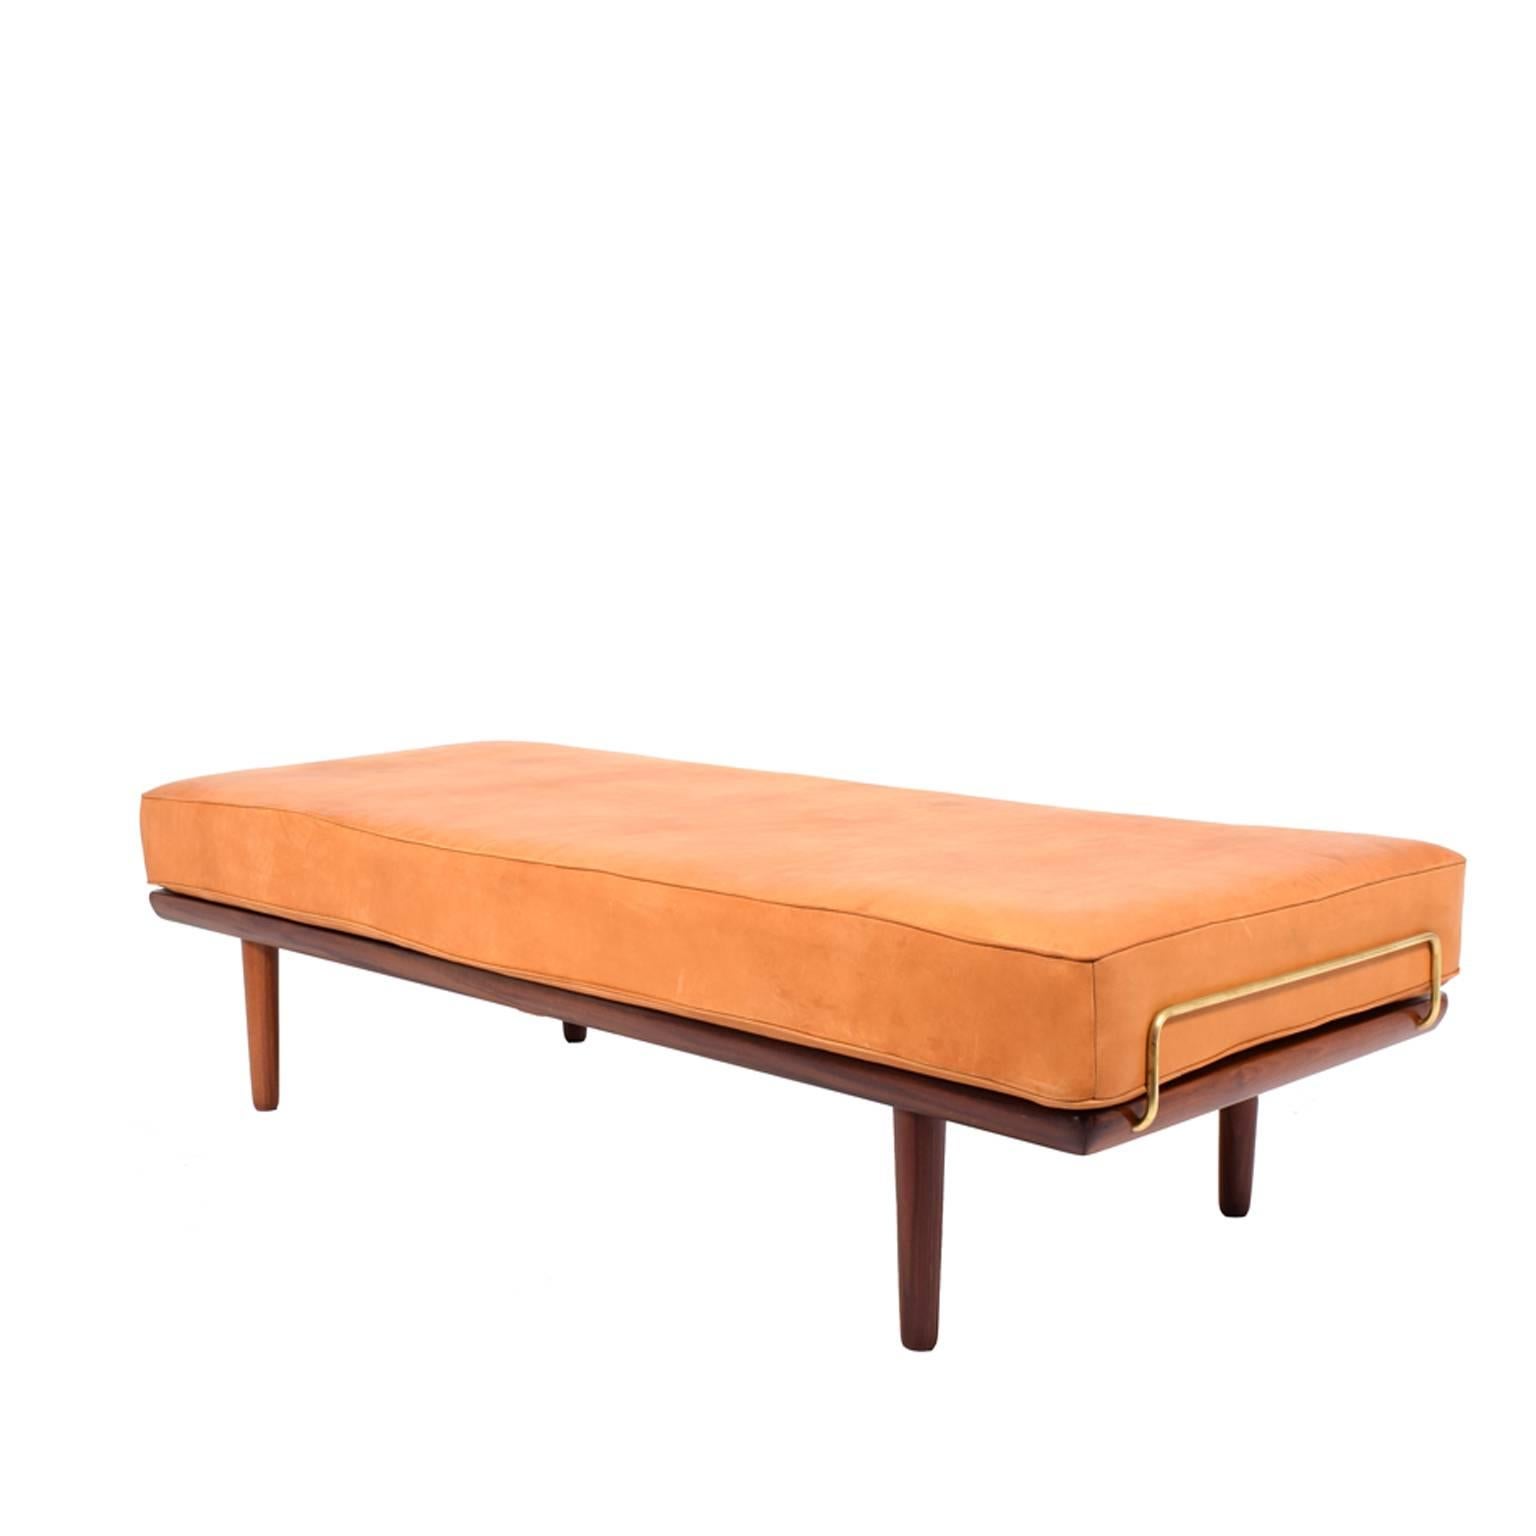 Solid teak daybed/sofa designed by Hans Wegner, 1956 for GETAMA. Removable back, original spring system mattress and back support.